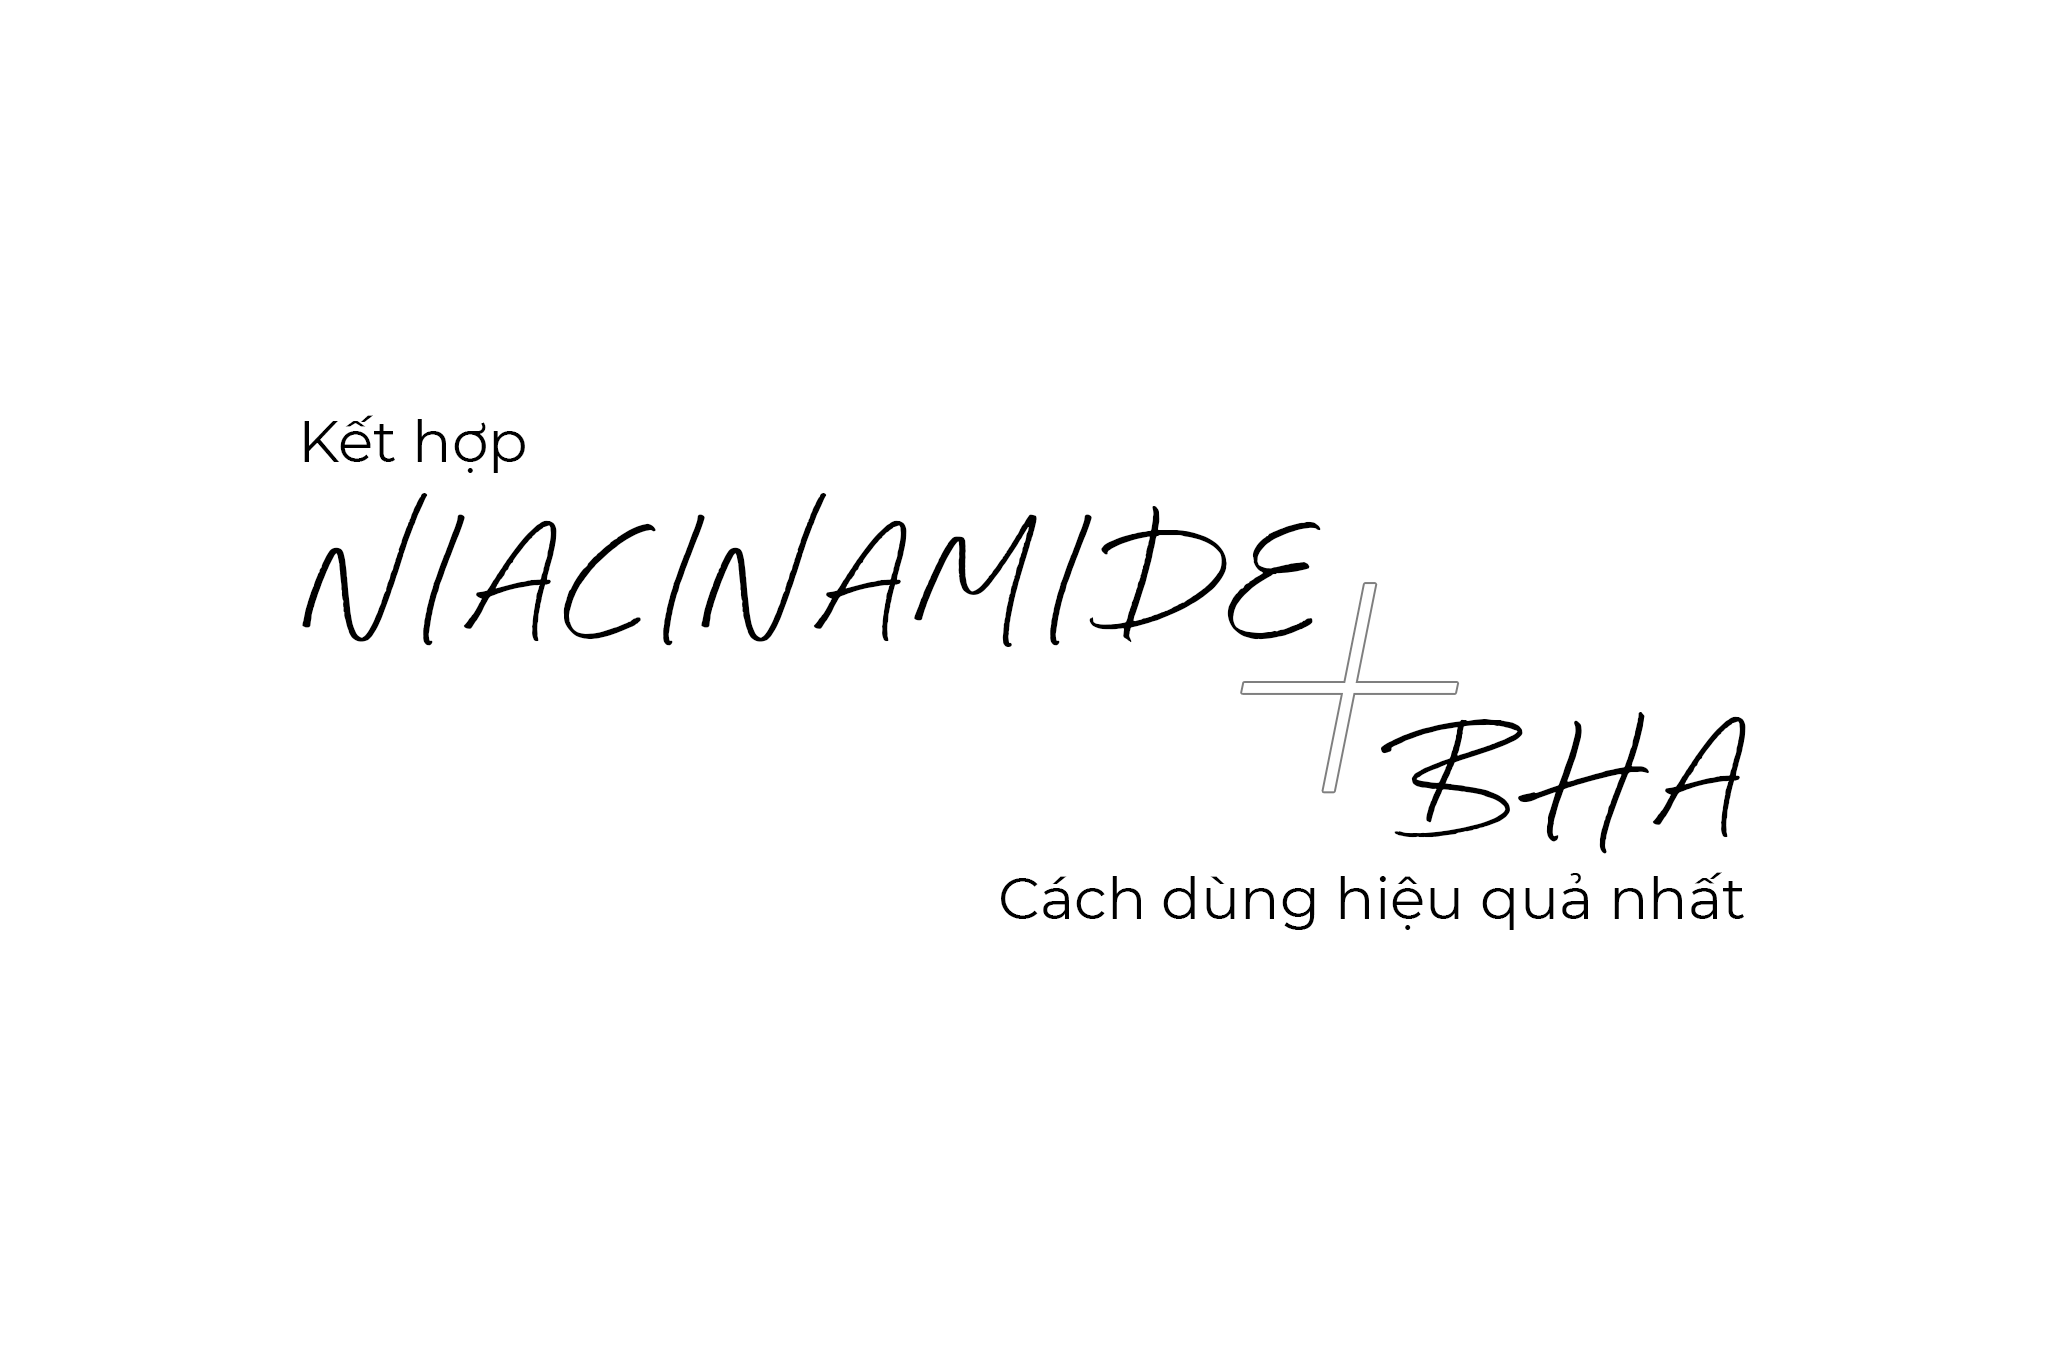 kết hợp niacinamide và bha